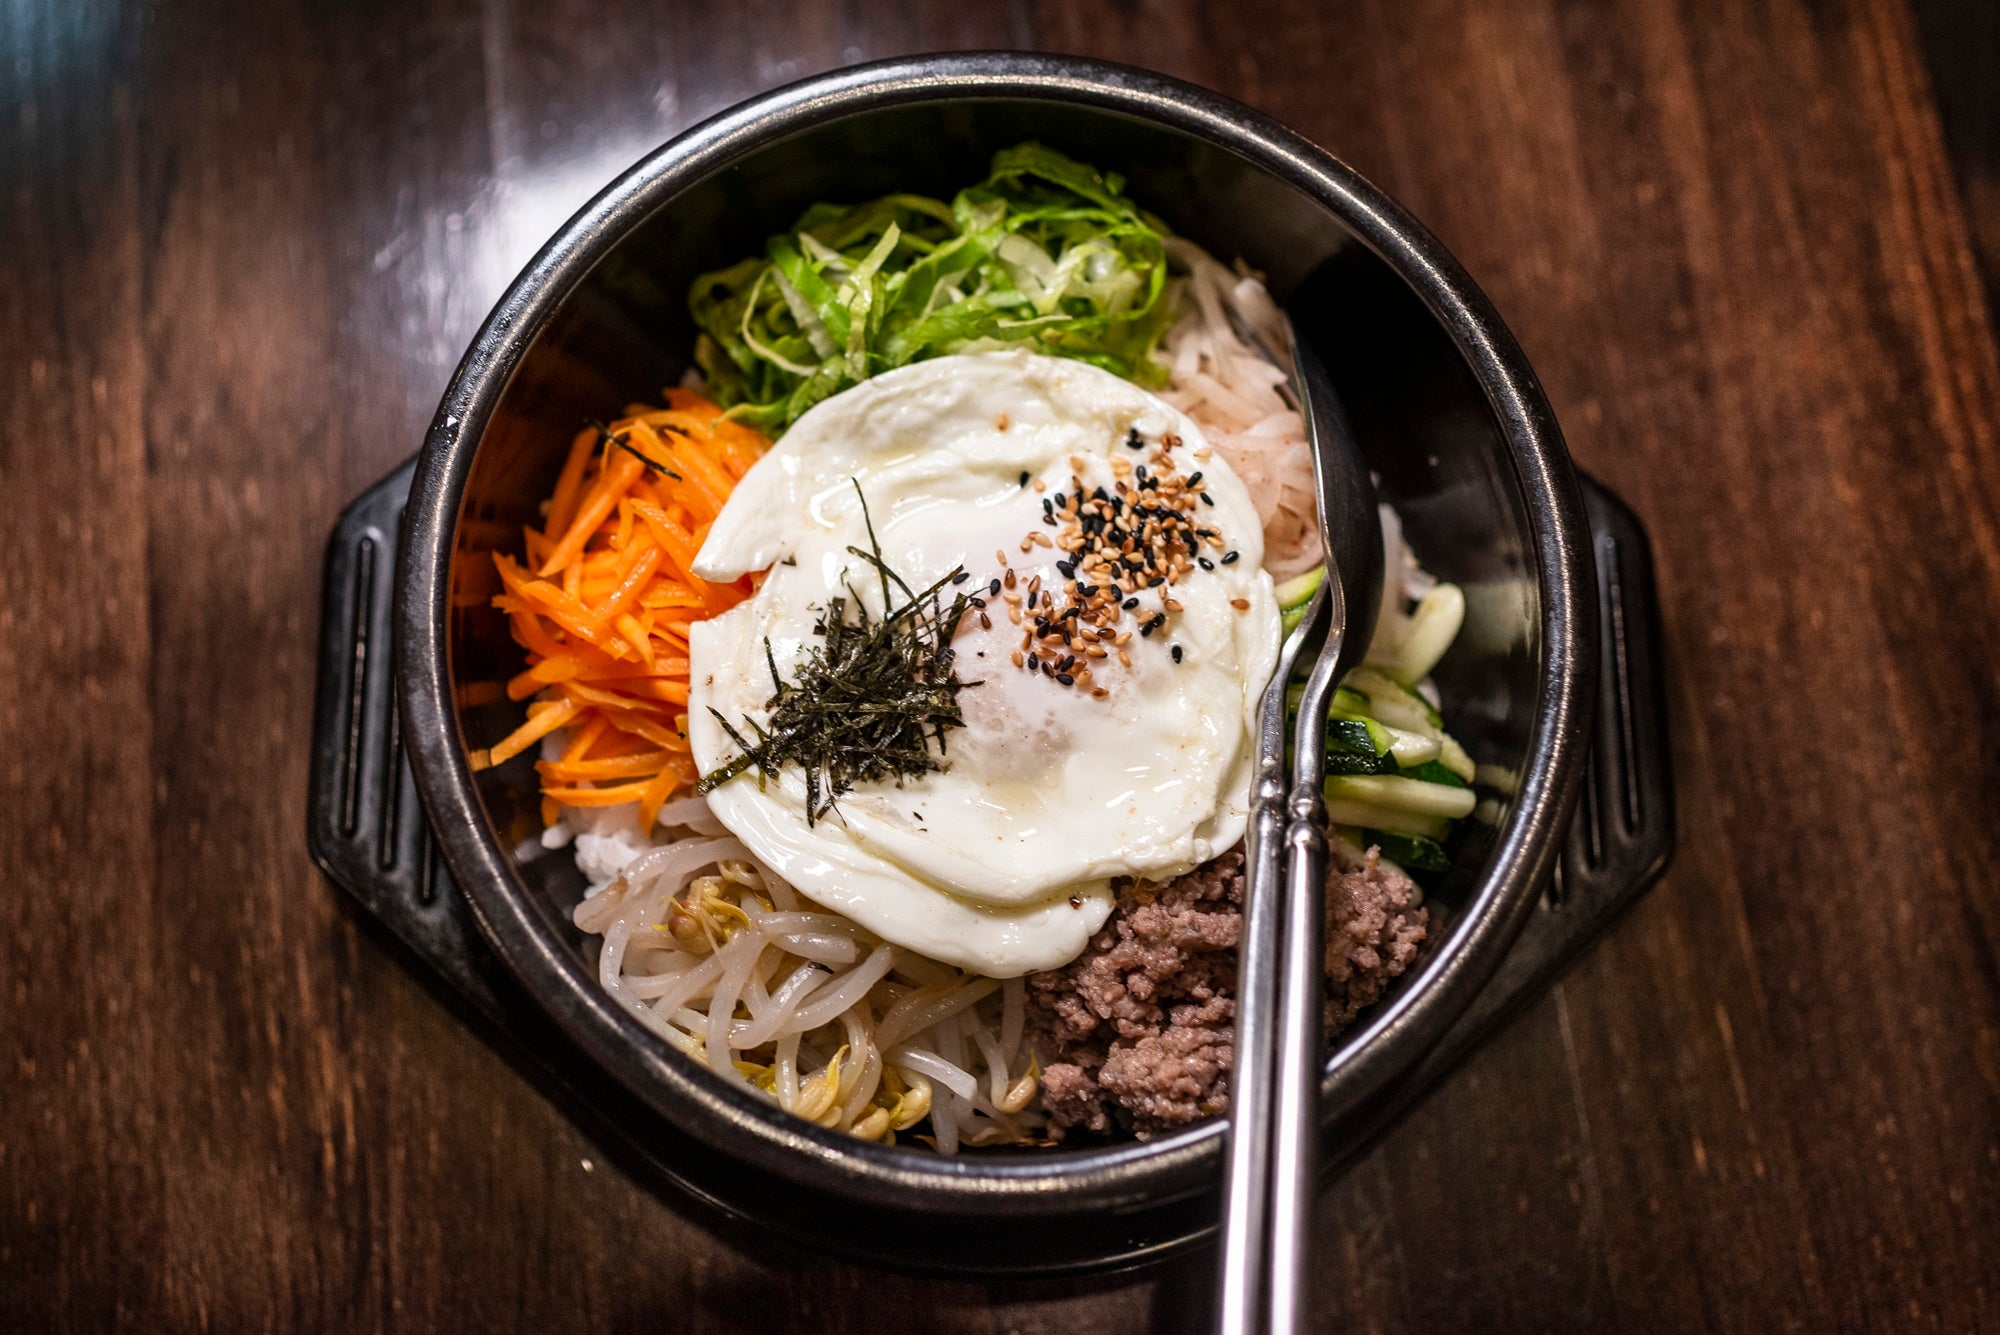 El 'bibimbap' es uno de los platos más reconocibles de la gastronomía coreana. Foto: Alfredo Cáliz